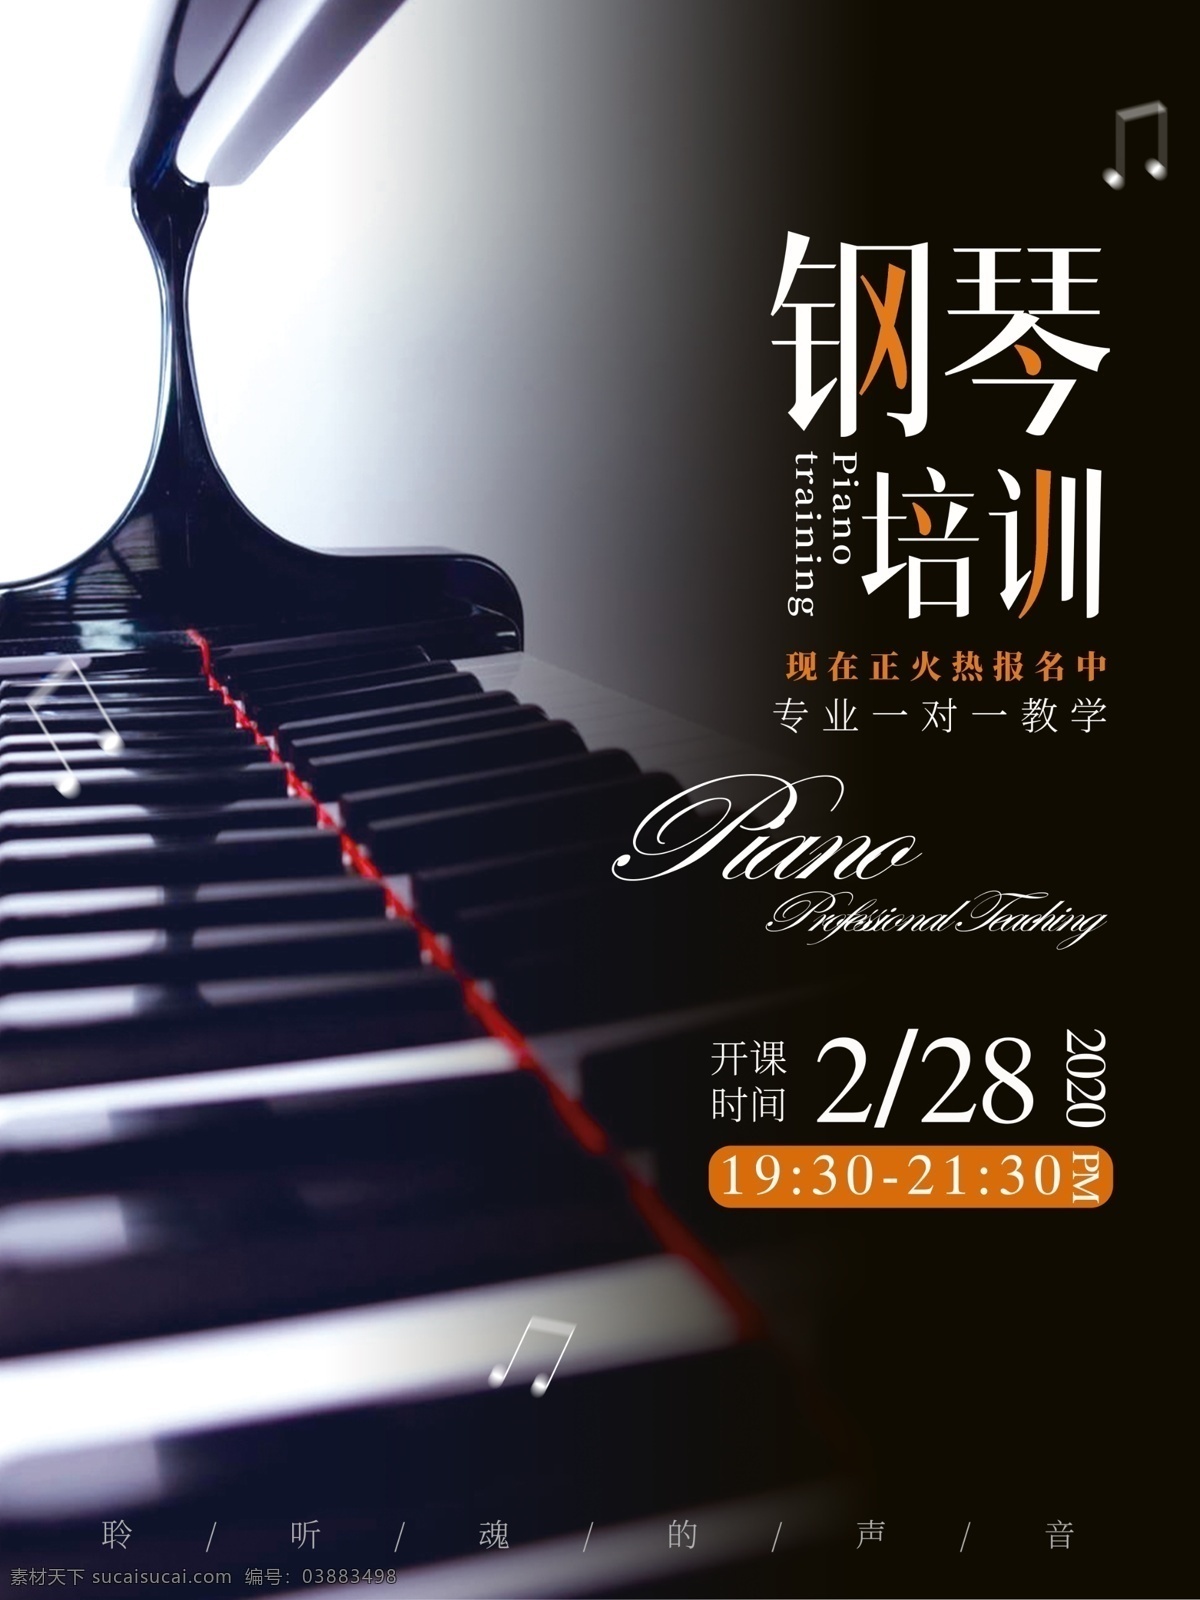 钢琴教育 兴趣课 钢琴课宣传 钢琴培训 钢琴课海报